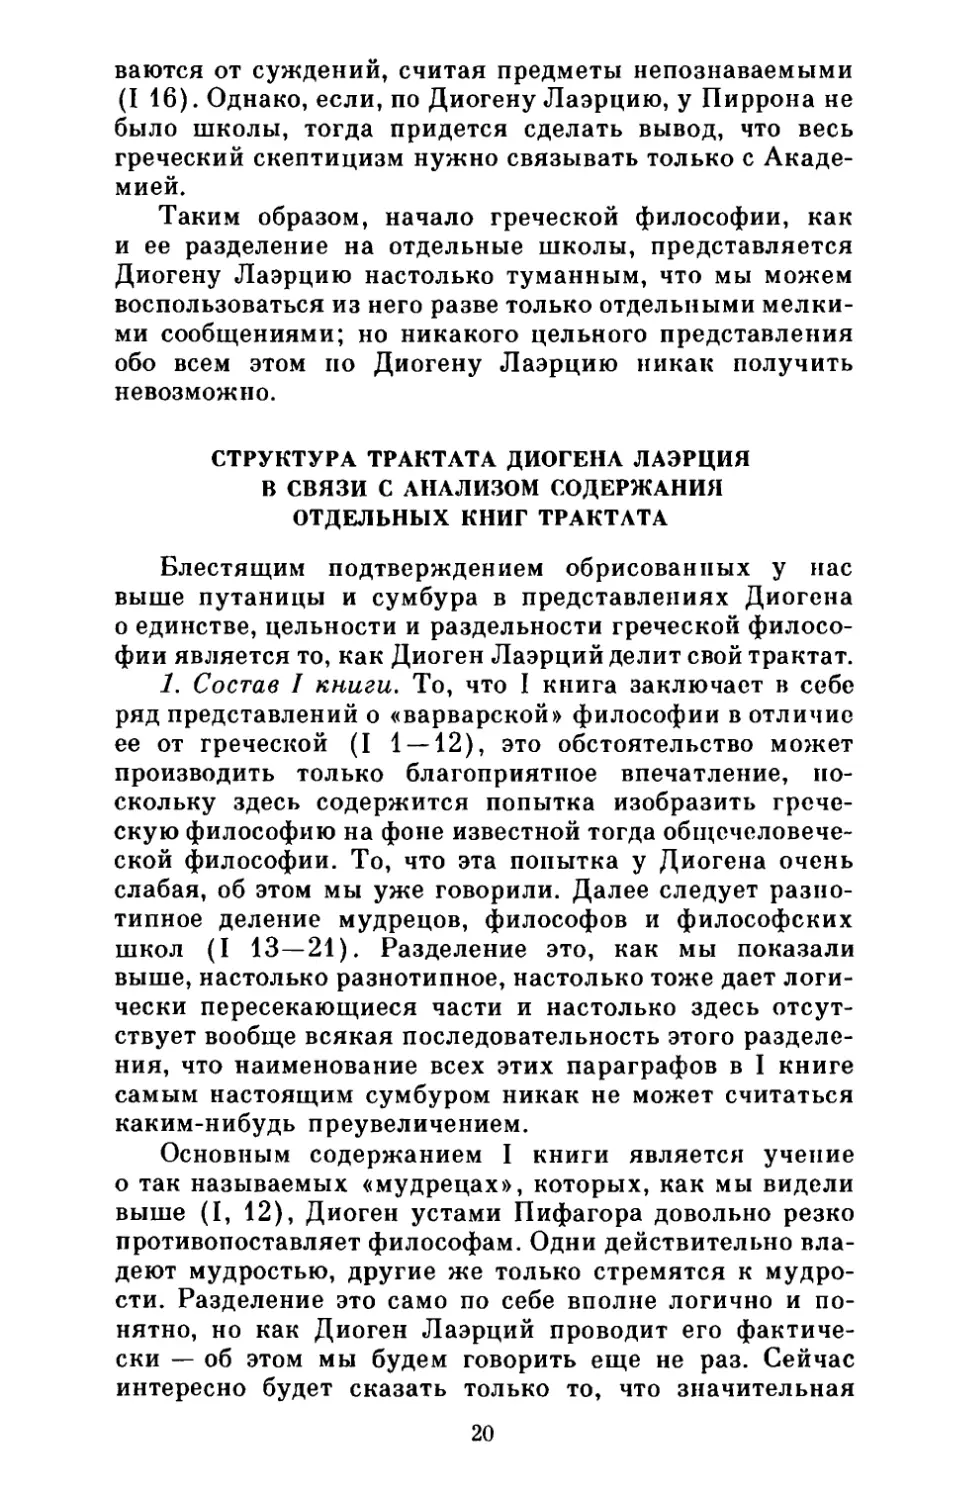 Структура трактата Диогена Леэрция в связи с анализом содержания отдельных книг трактата